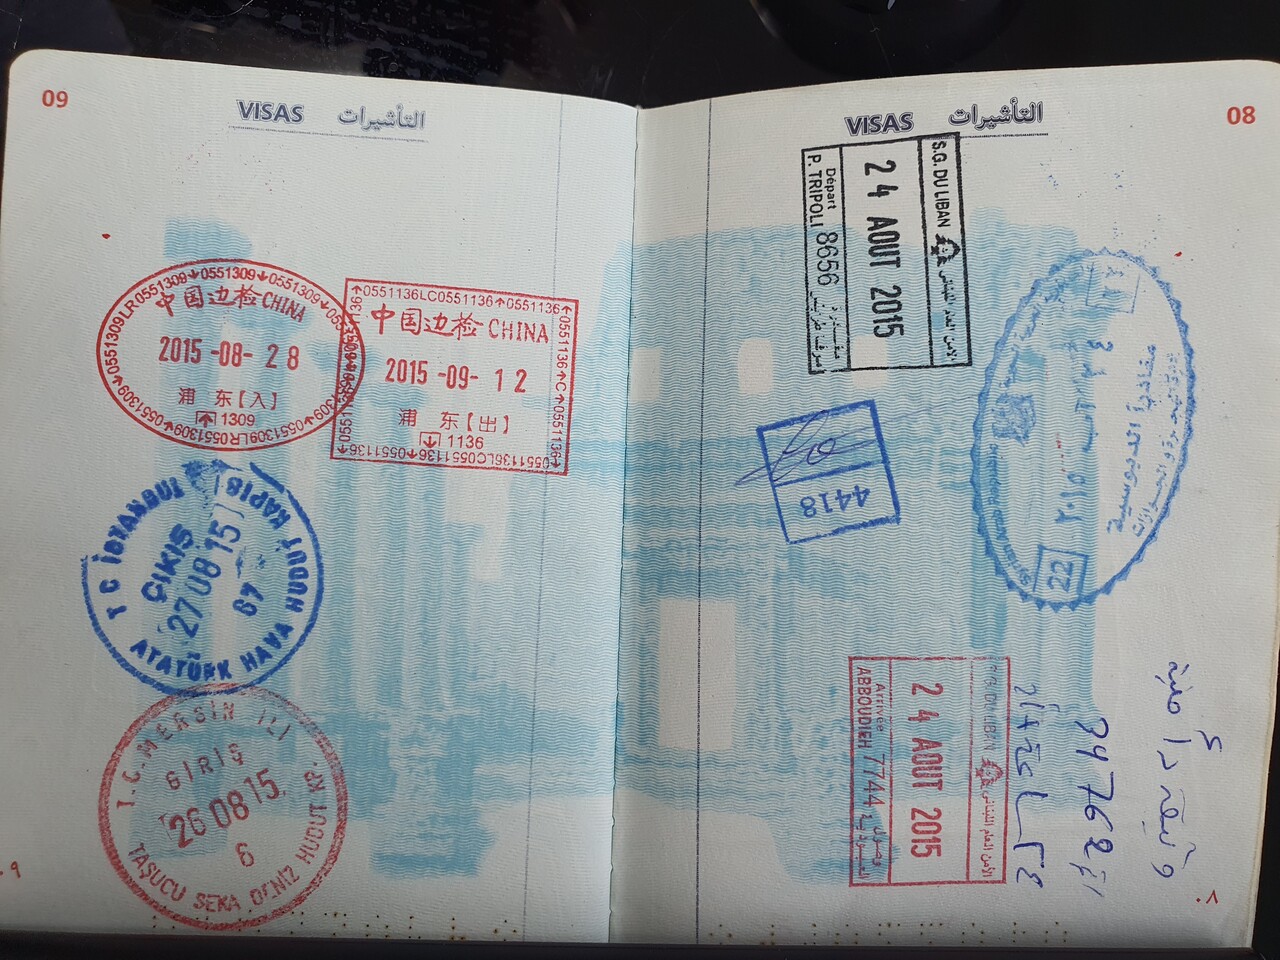 하산이 2015년 피난할 때 사용했던 여권에는 이동했던 국가의 출입국 도장이 찍혀있다. 하산은 시리아 알레포, 다마스쿠스, 레바논 트리폴리, 튀르키예 메르신, 이스탄불, 중국 상해를 거쳐 2015년 9월 12일에 인천으로 입국했다. 박시몬 기자